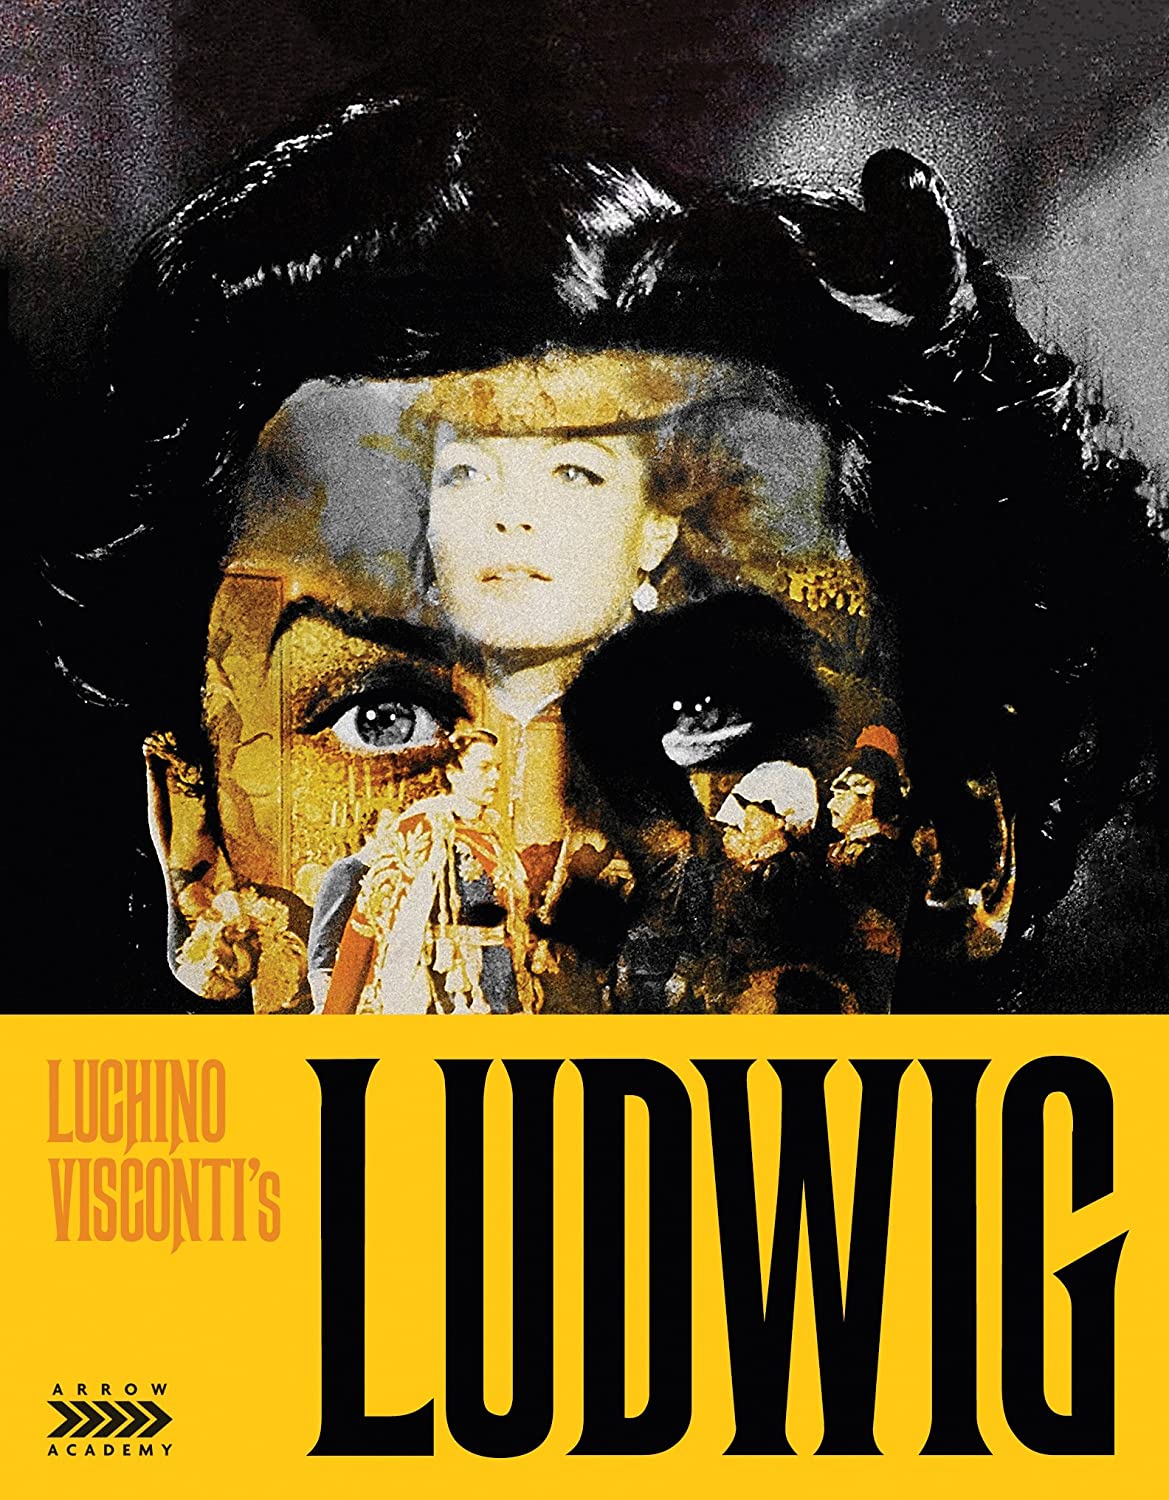 Luscino Visconti's Ludwig (Arrow Academy) - Darkside Records